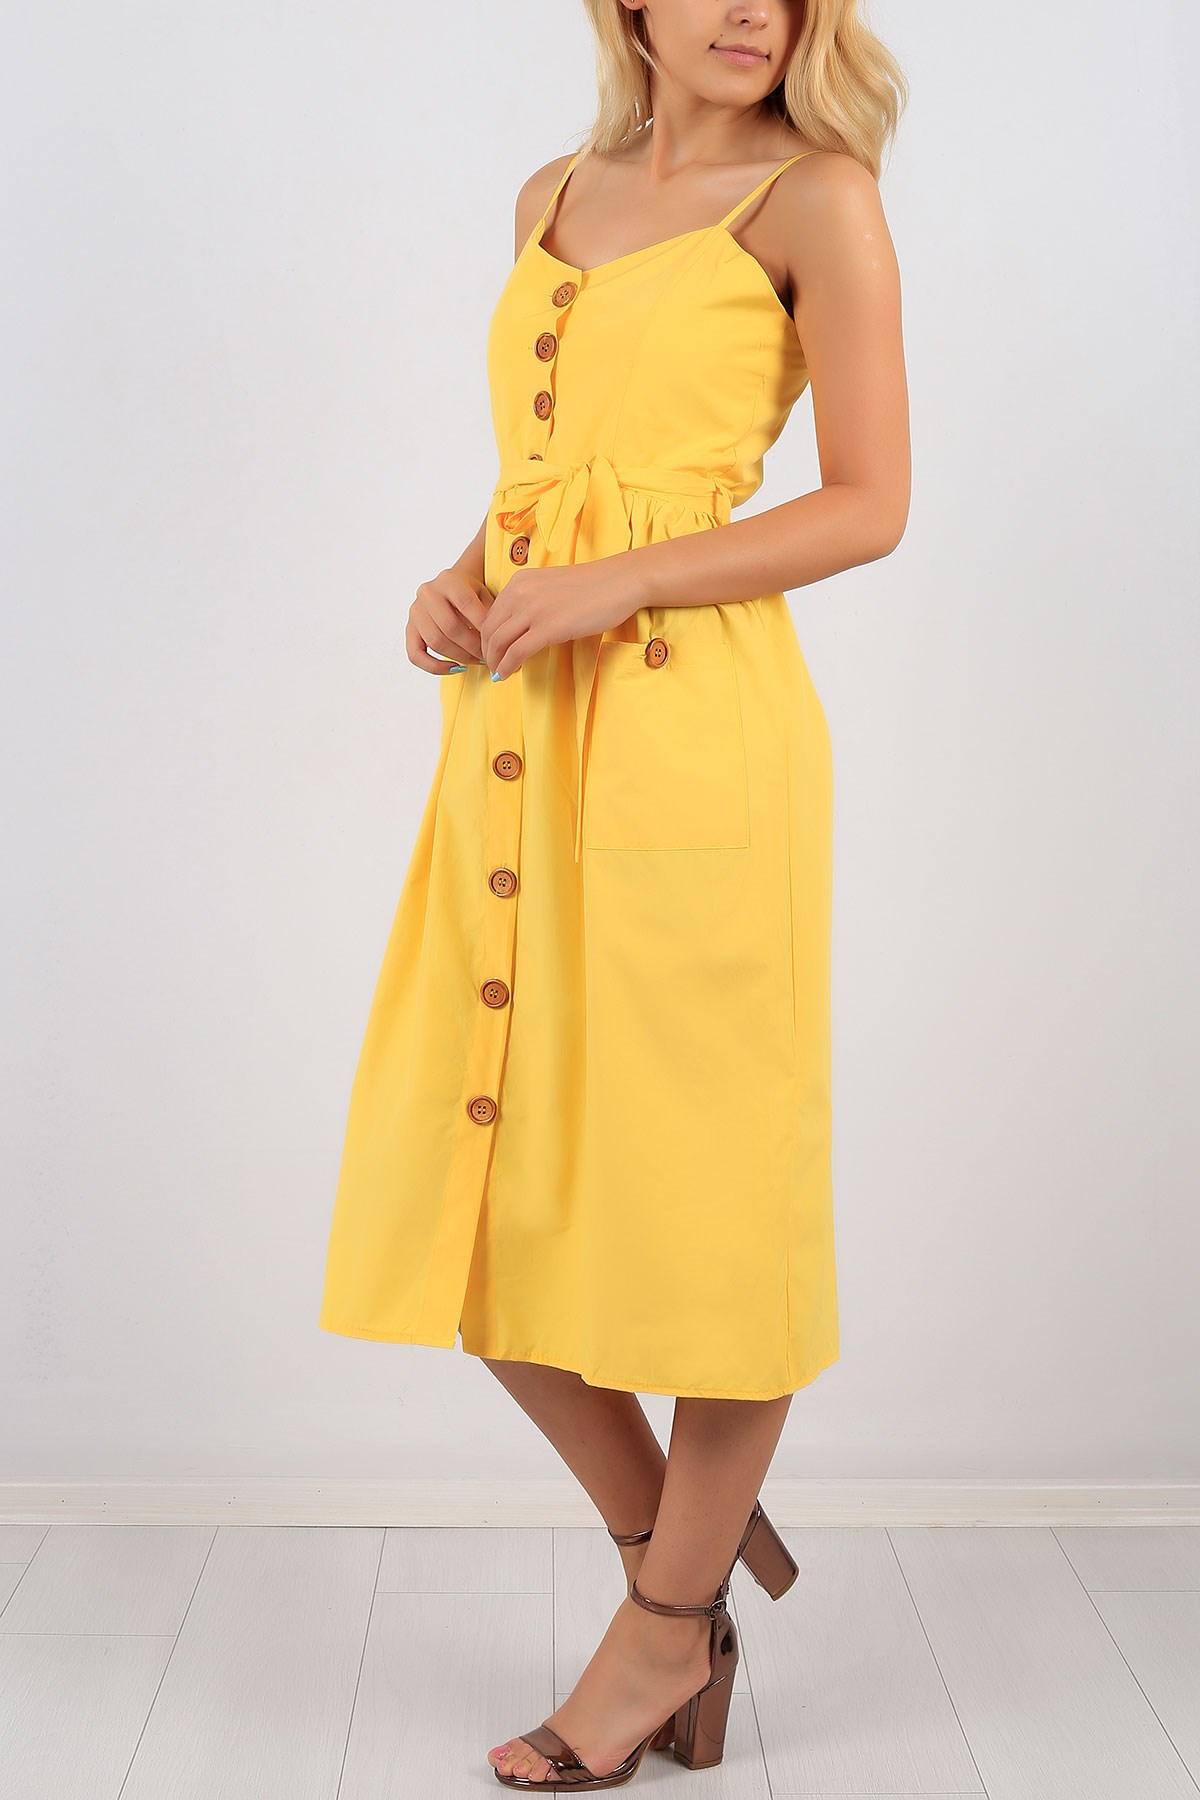 Askılı Düğme Detay Sarı Bayan Elbise 8677B